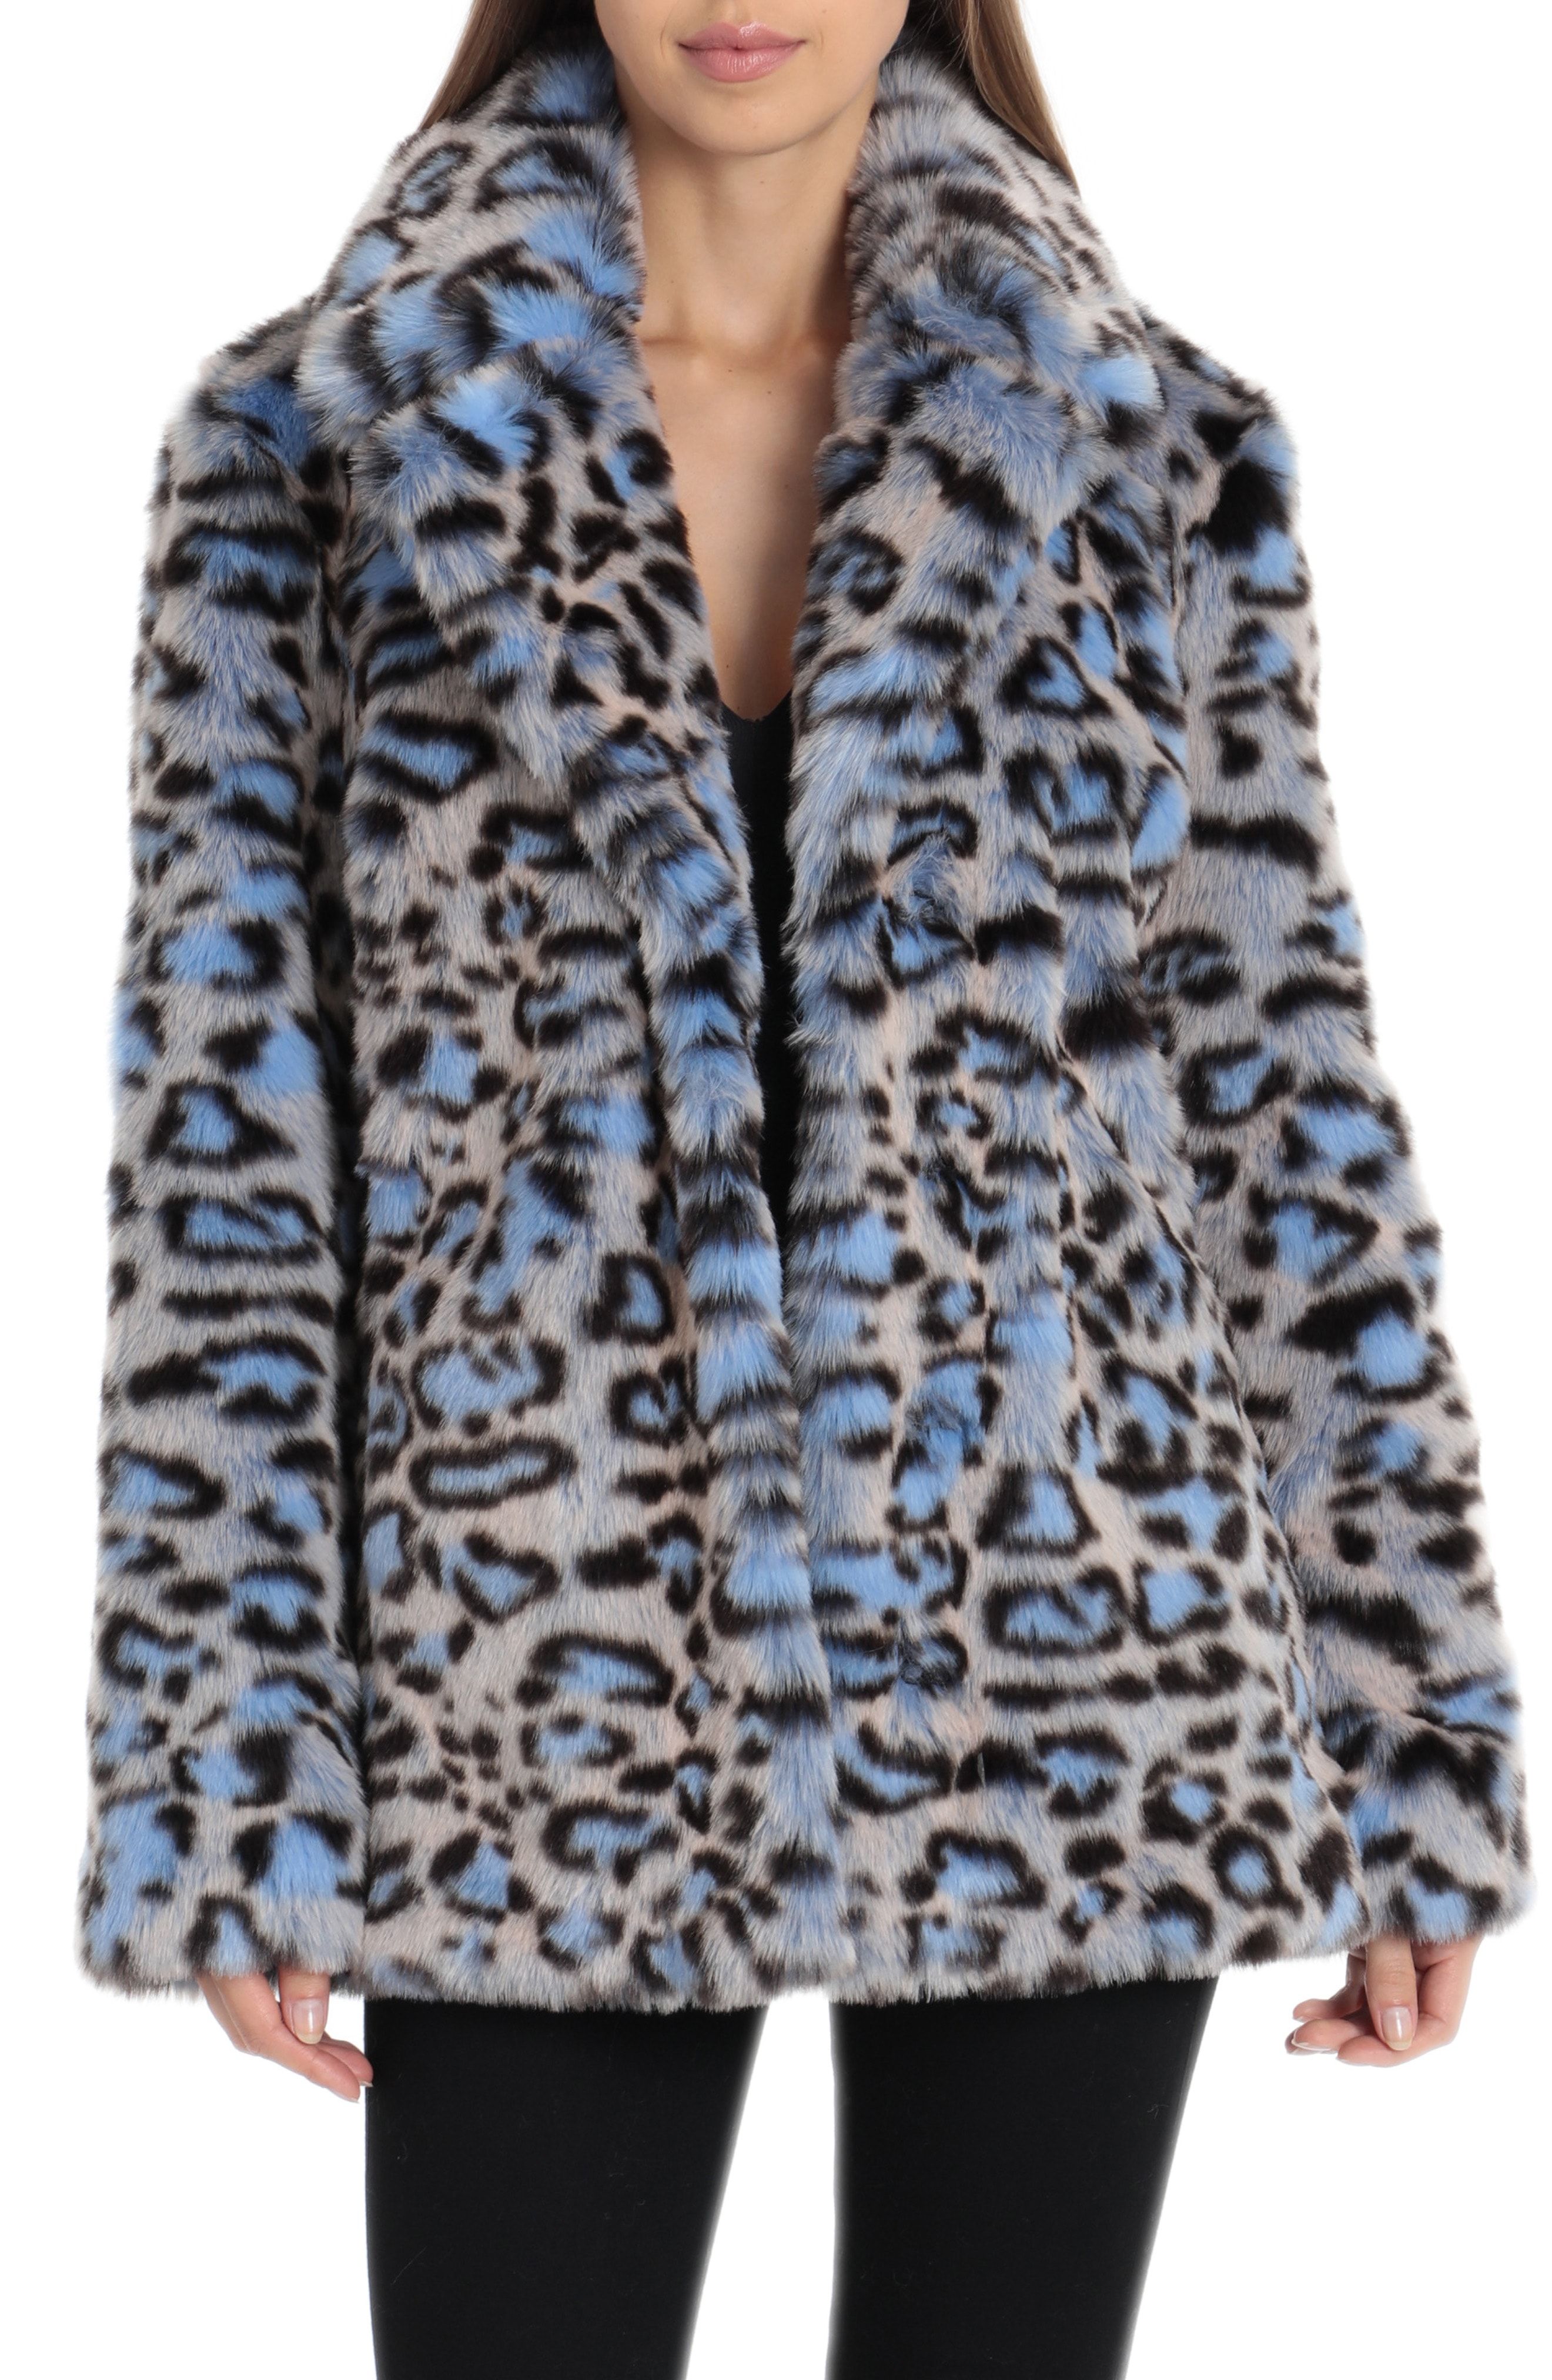 Le Top So Wild Adorable Faux Fur White Leopard Winter Jacket